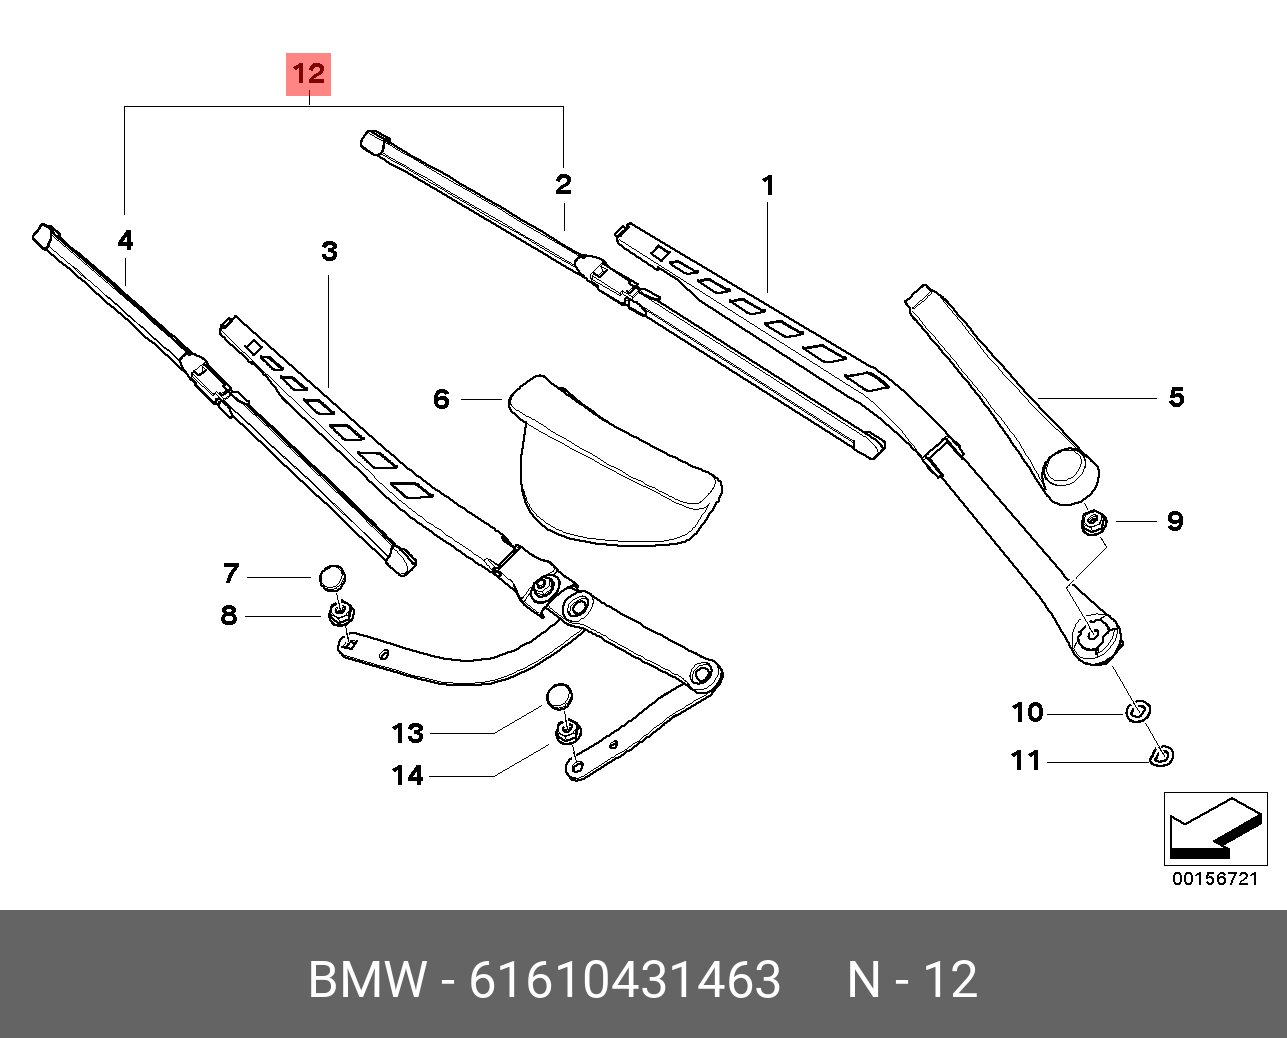 Щётки стеклоочистителя, комплект, передние   BMW арт. 61610431463